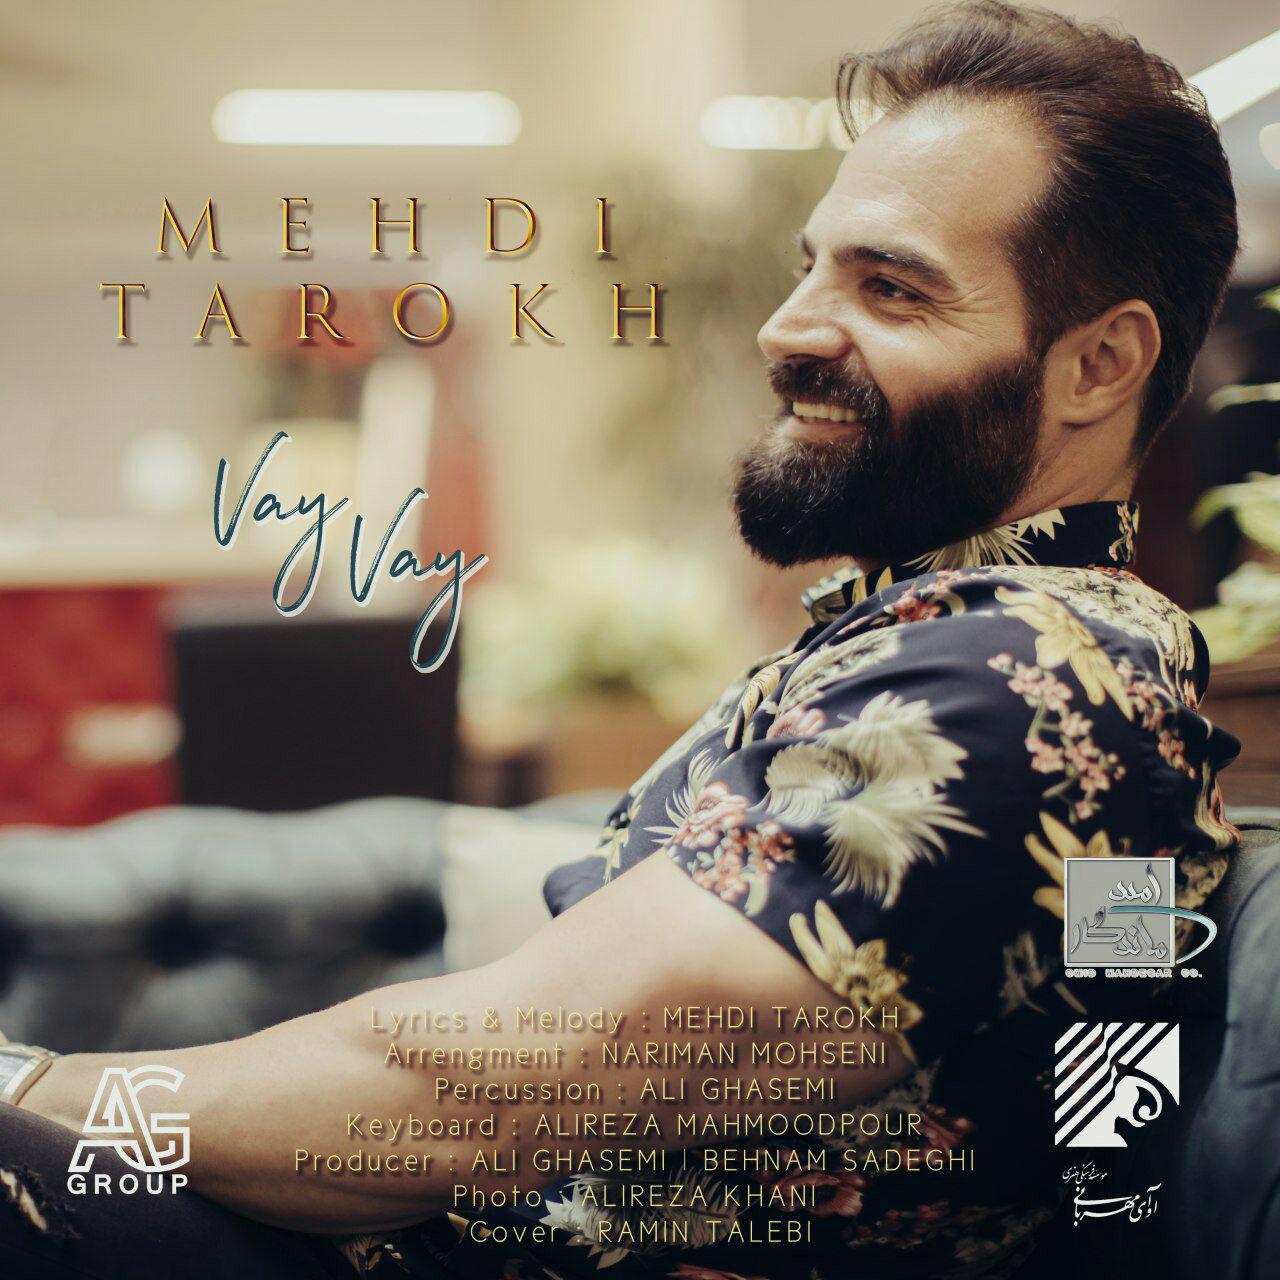  دانلود آهنگ جدید مهدی تارخ - وای وای | Download New Music By Mehdi Tarokh - Vay Vay